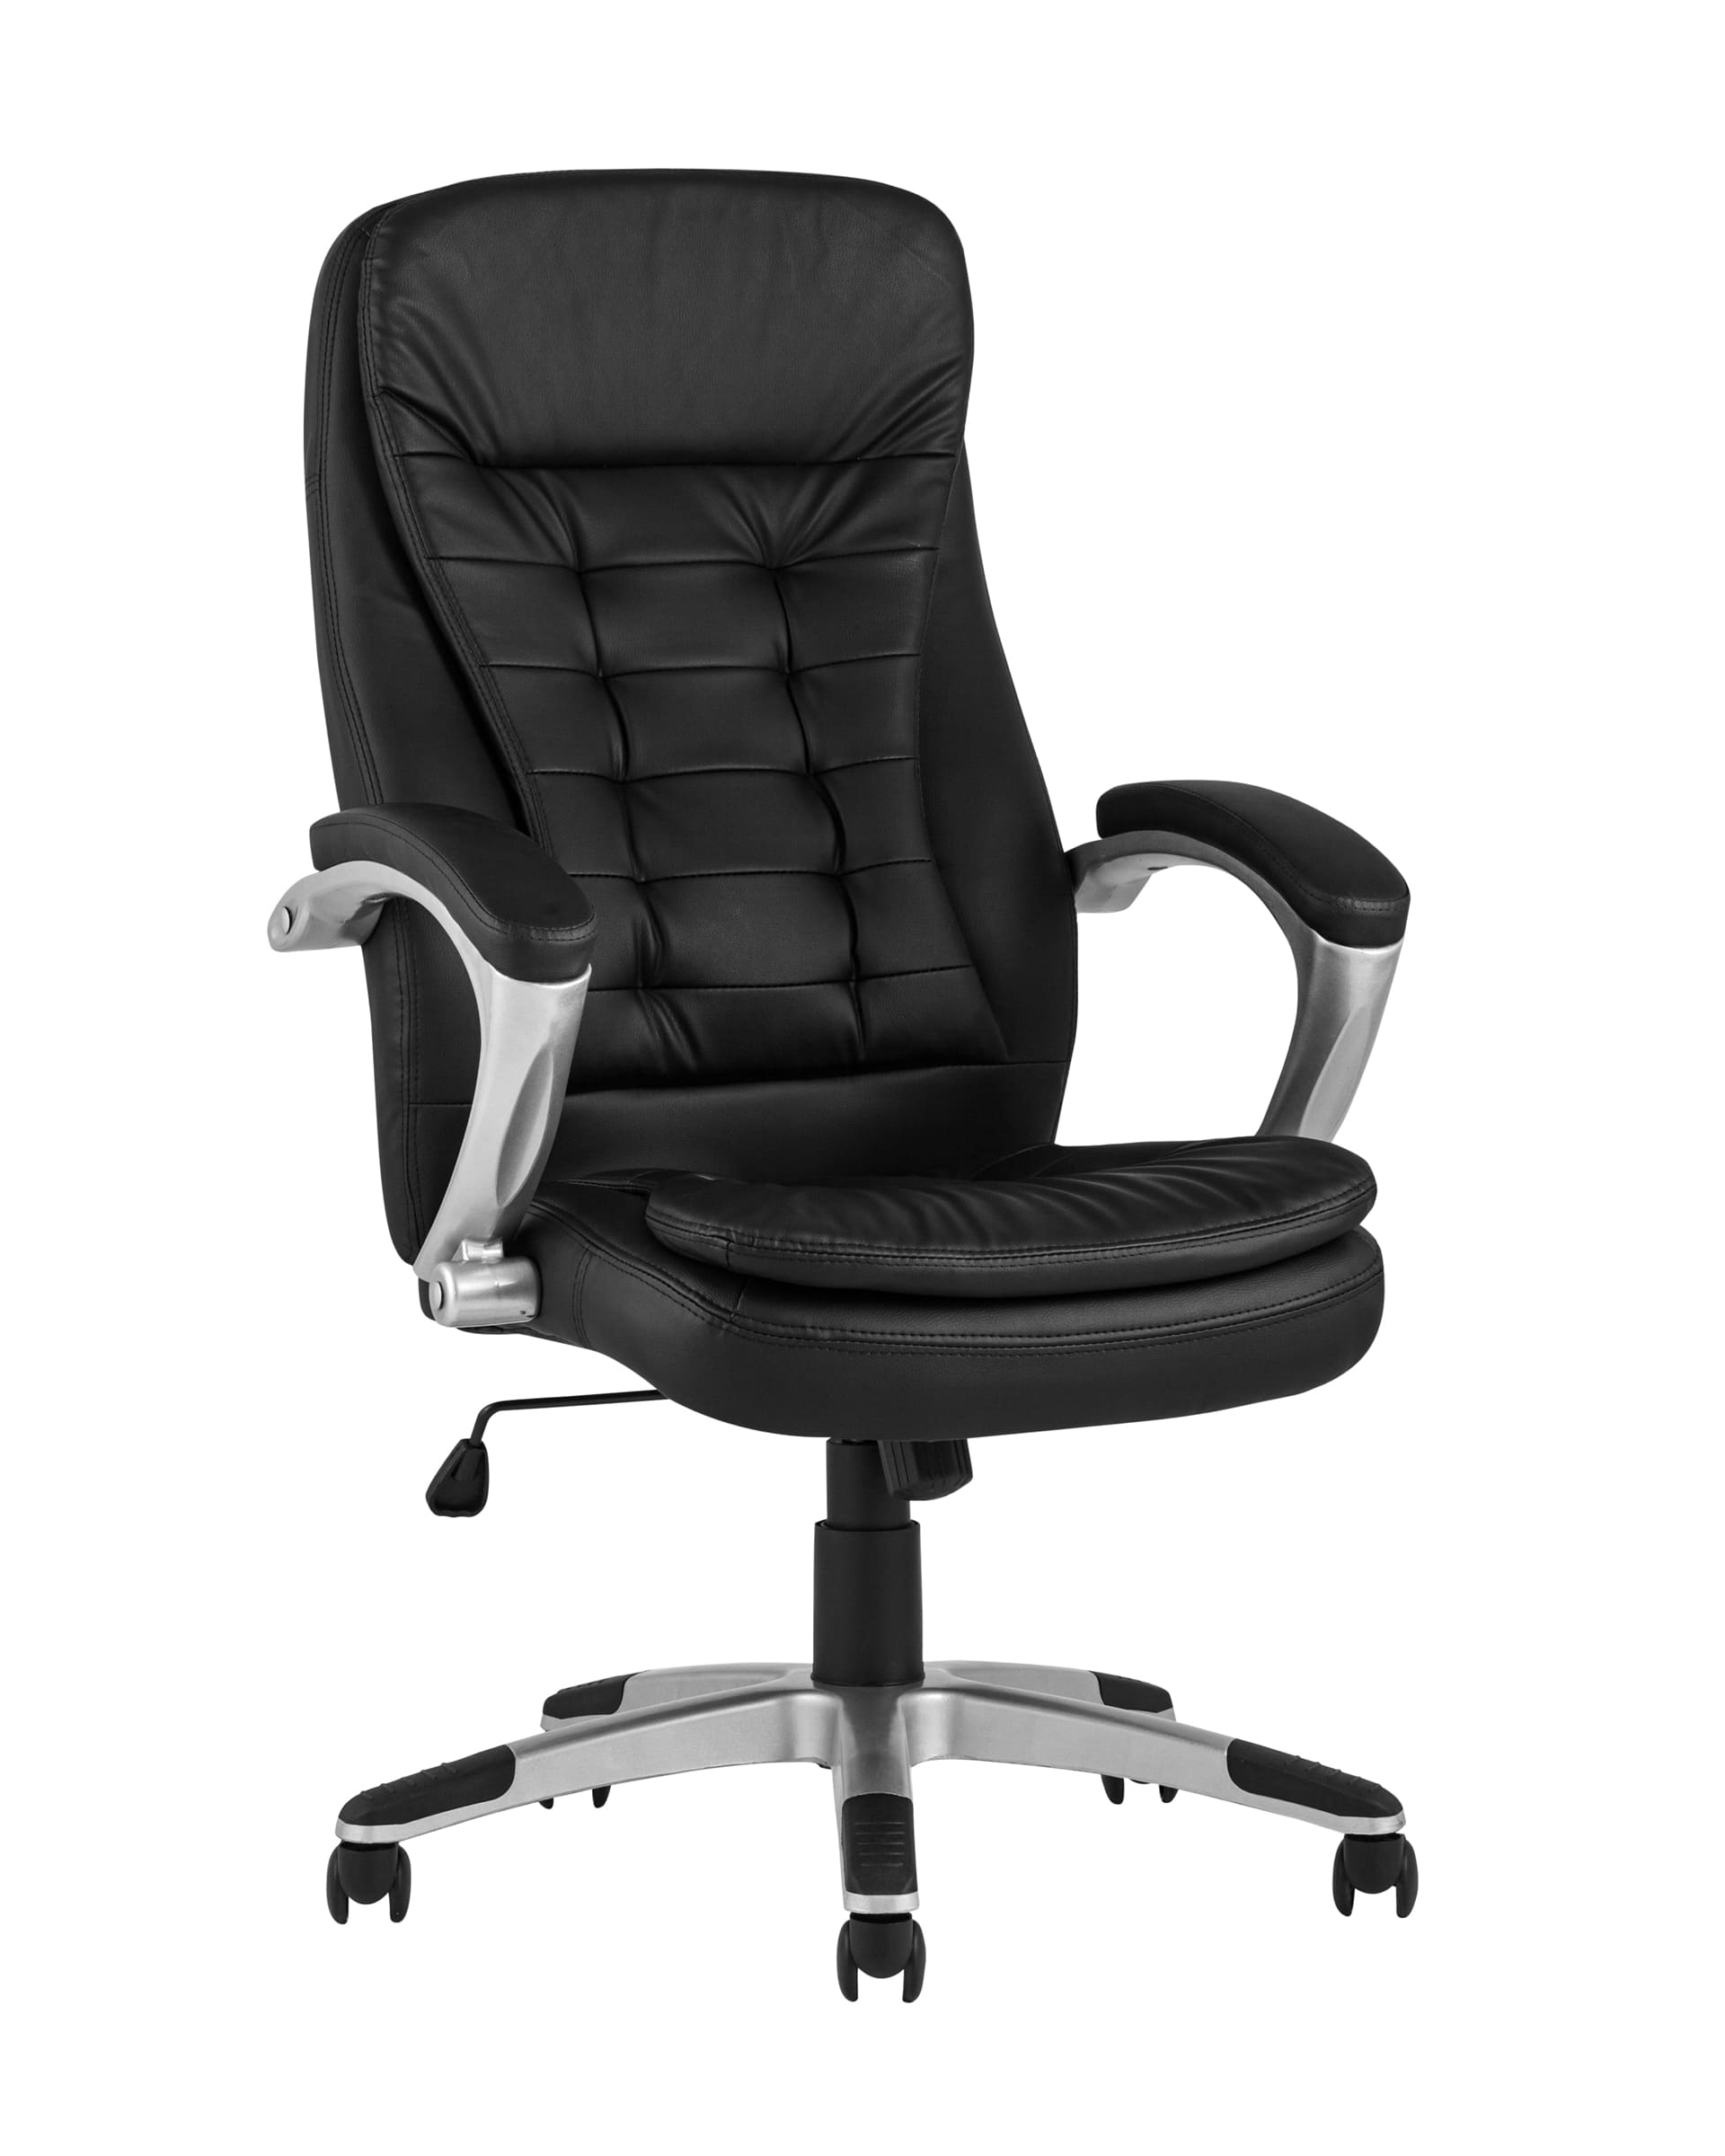 Компьютерное кресло TopChairs Control офисное черное обивка экокожа, механизм качания Top Gun